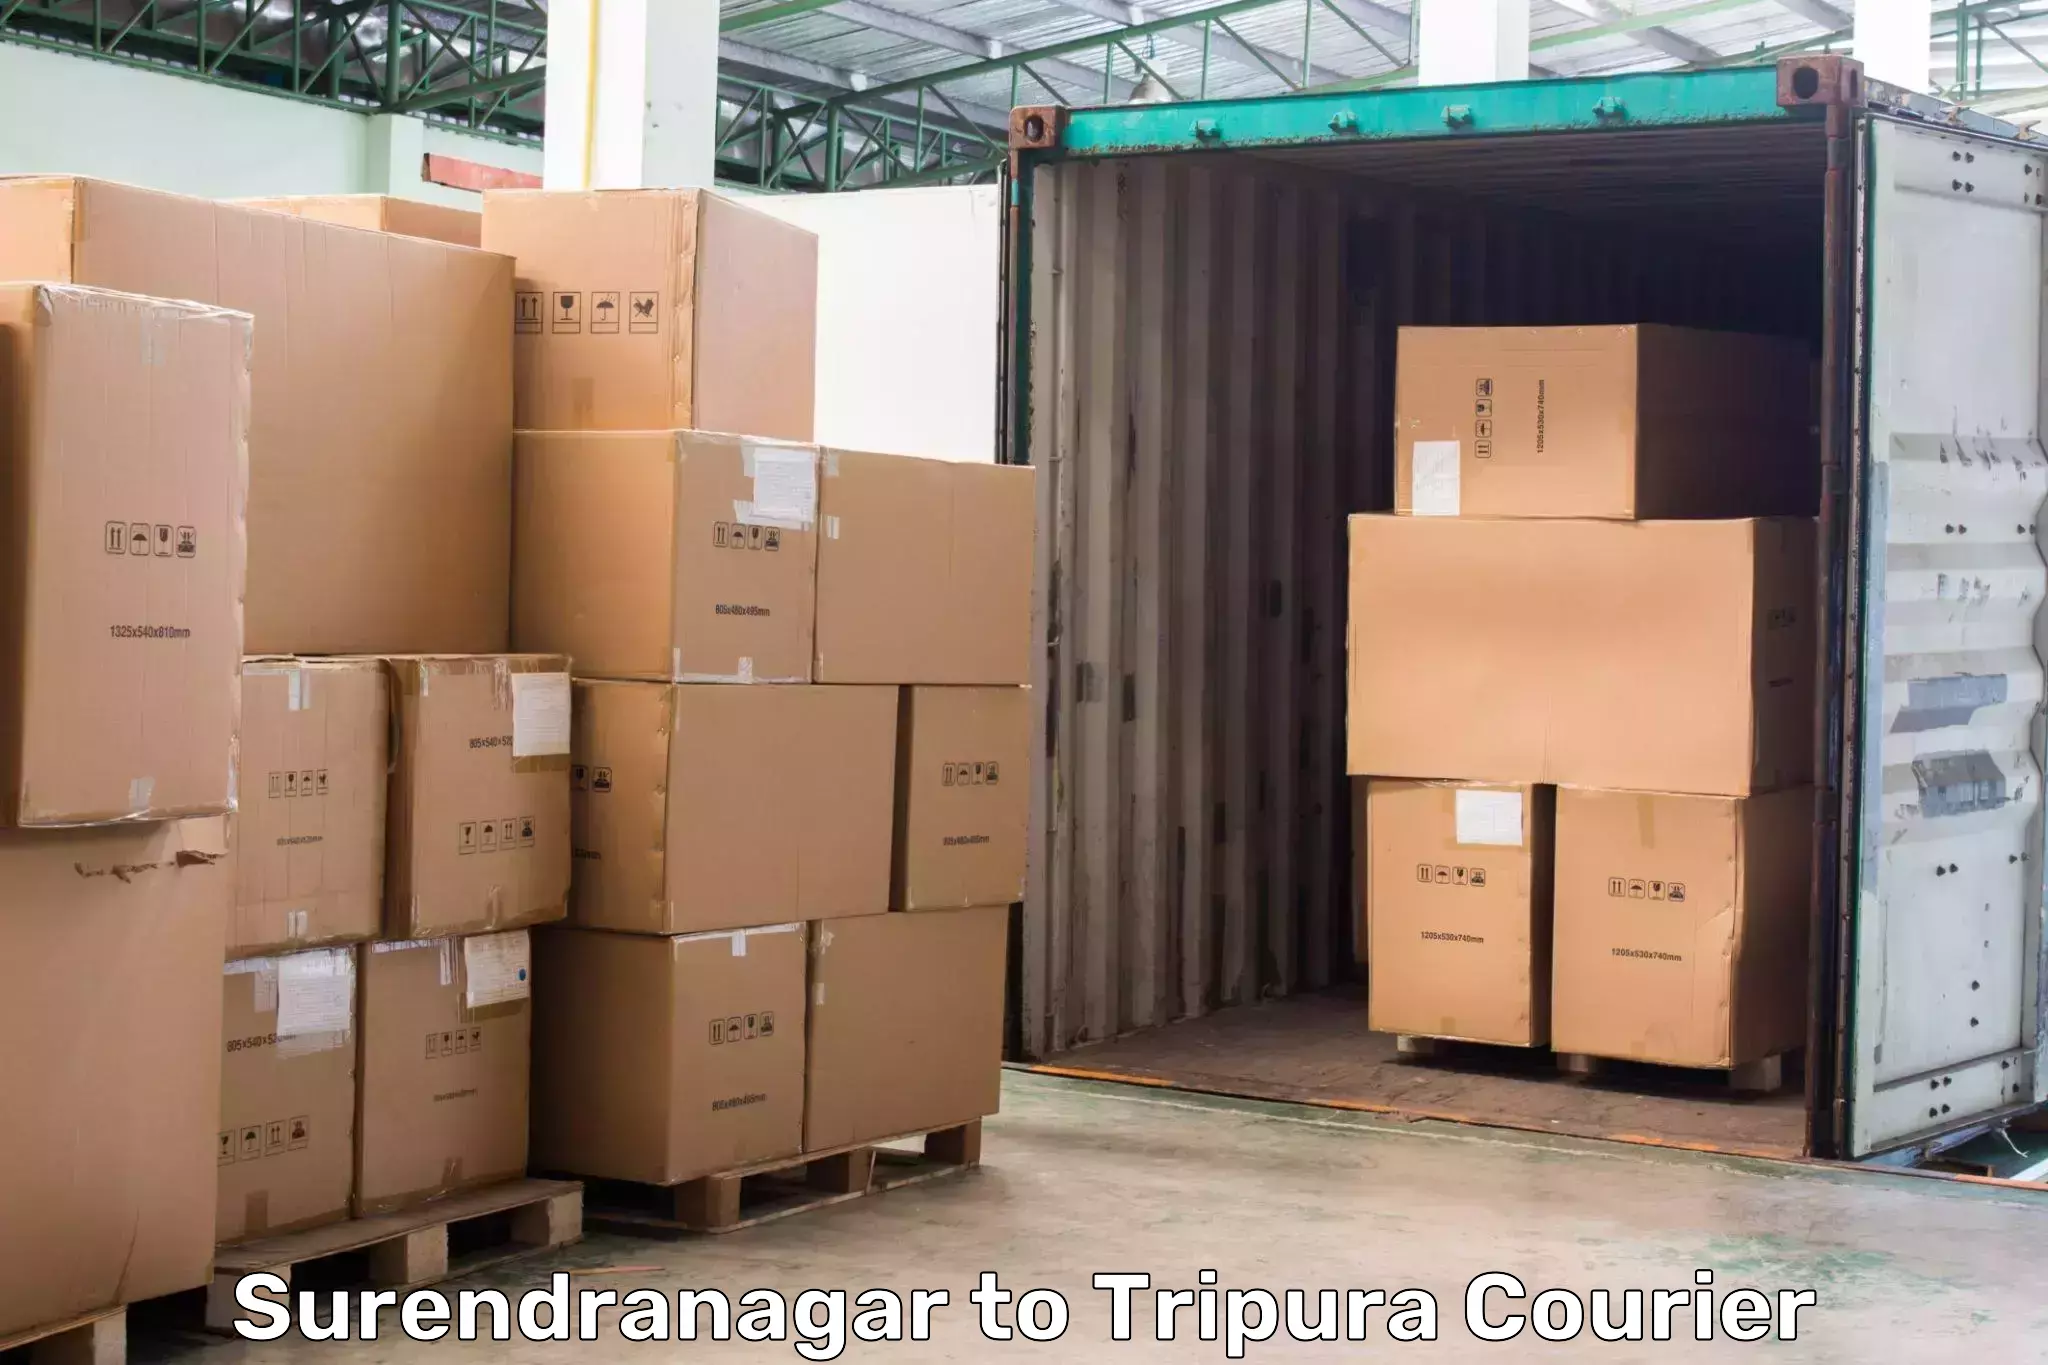 High-speed parcel service Surendranagar to Amarpur